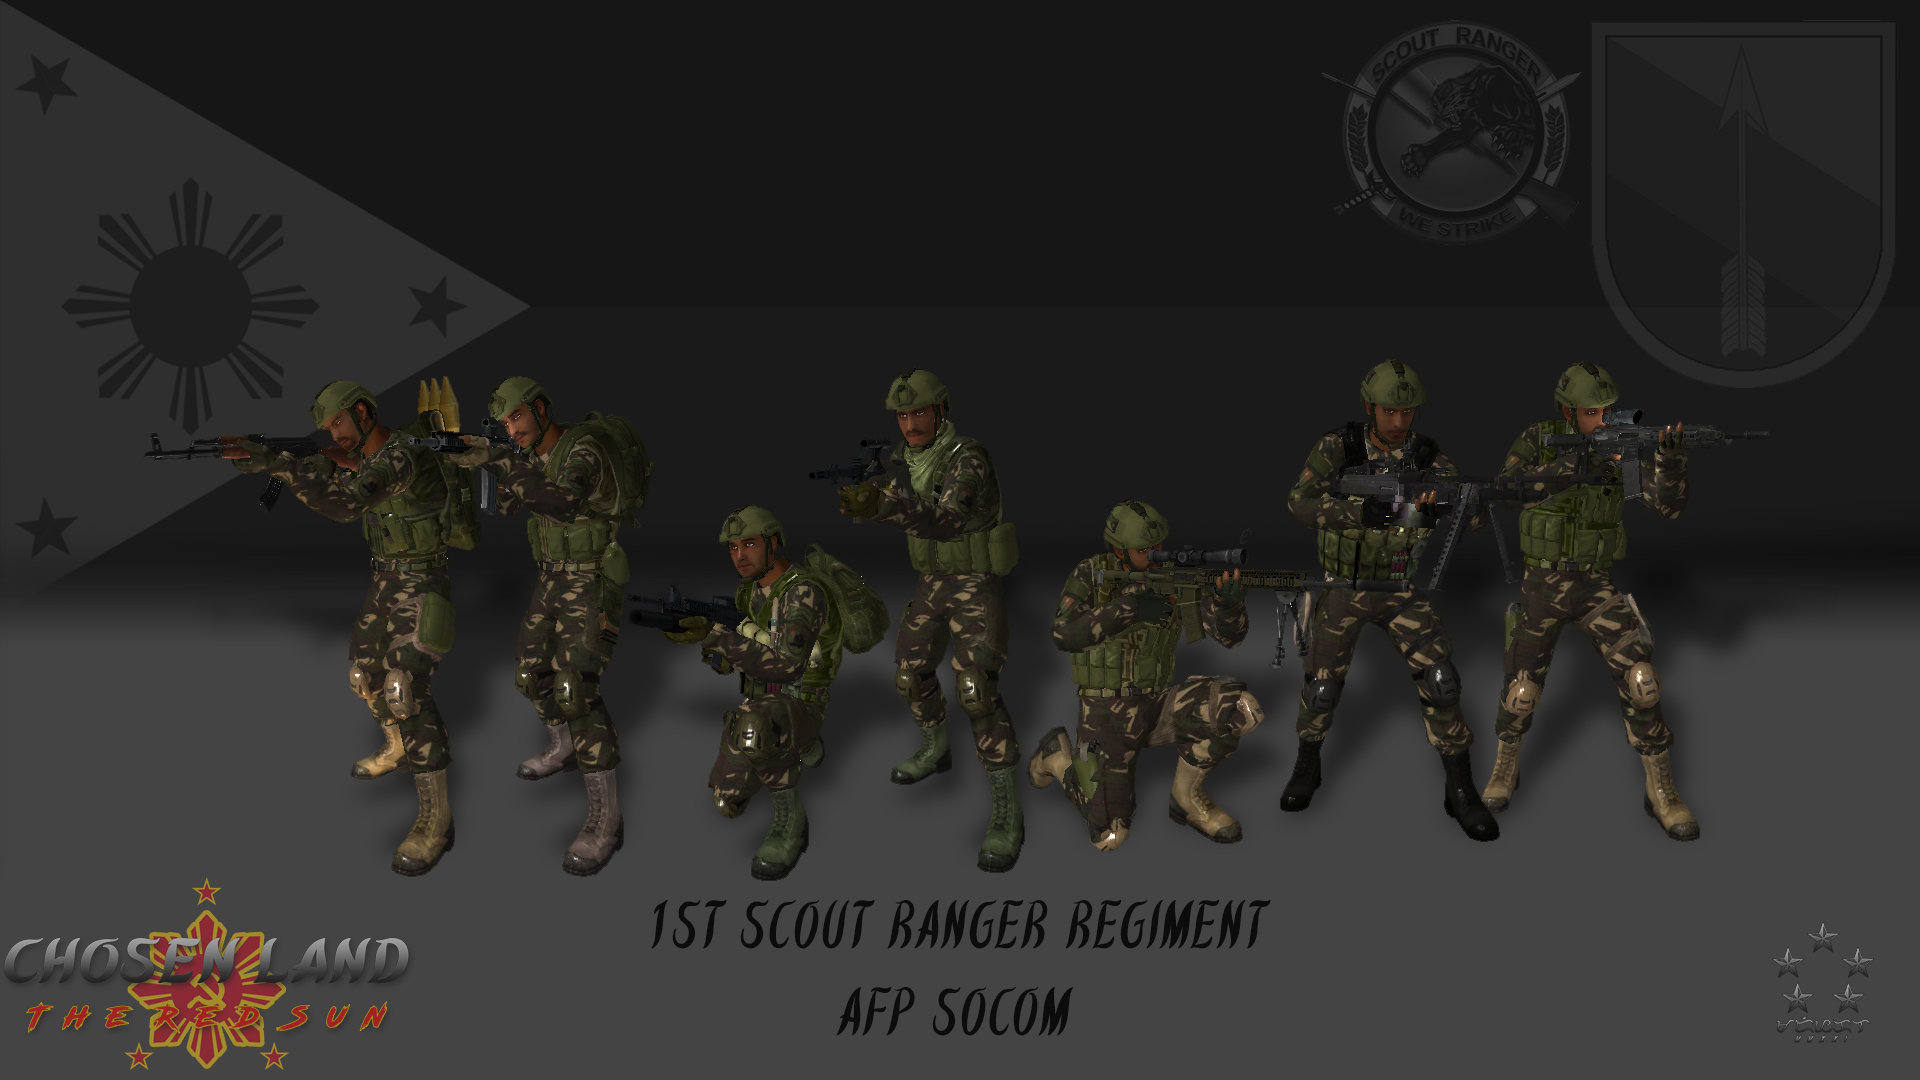 First Scout Ranger Regiment